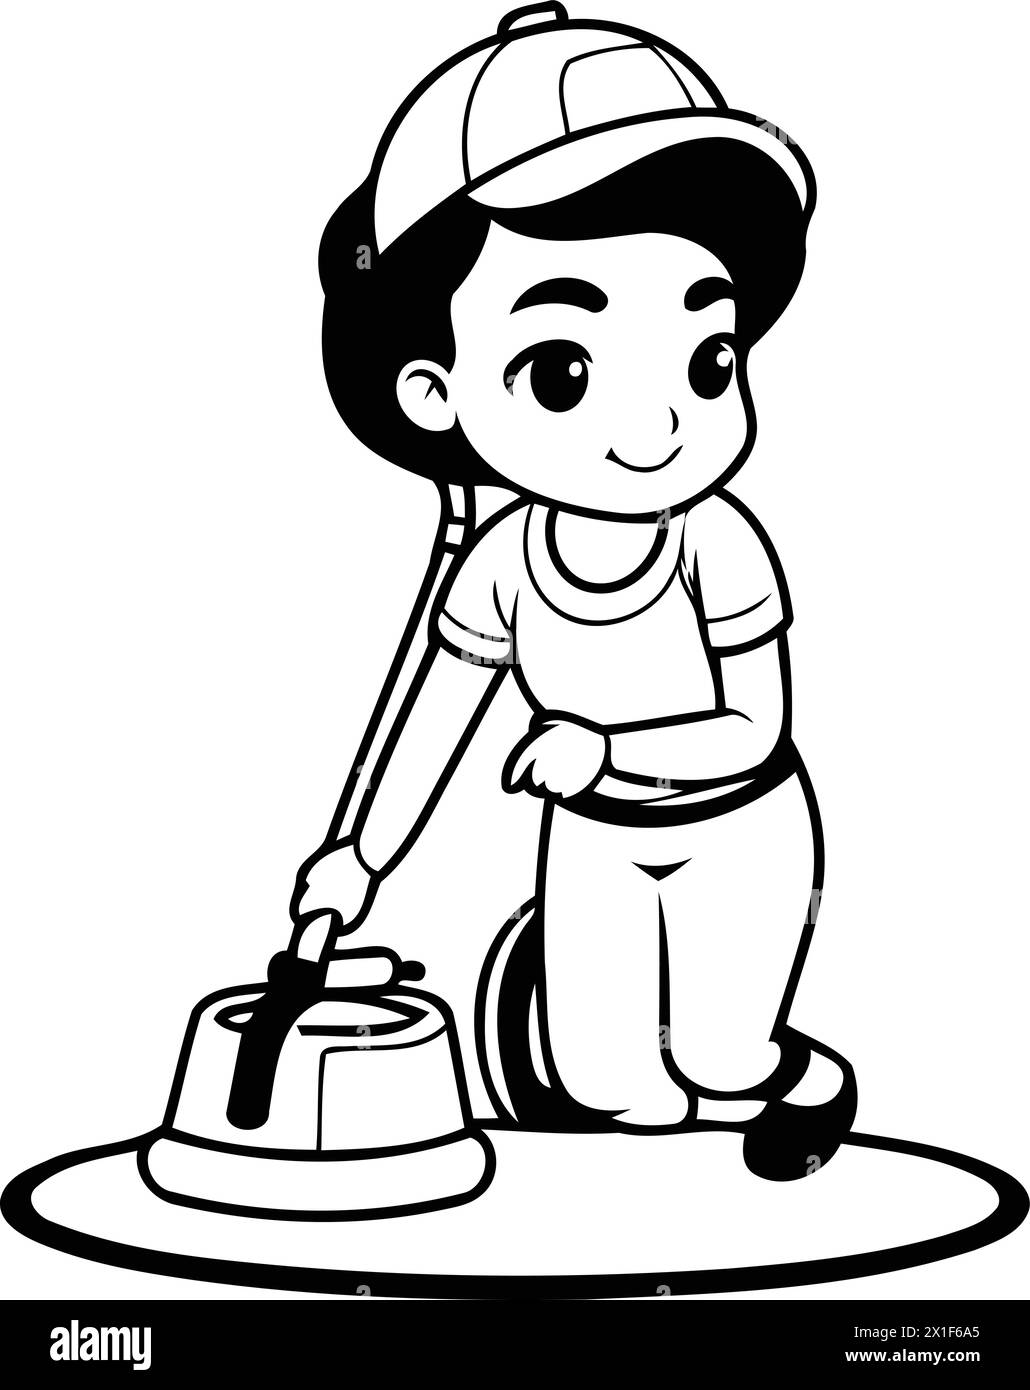 Bambino carino che pulisce la casa con un aspirapolvere. Illustrazione vettoriale. Illustrazione Vettoriale